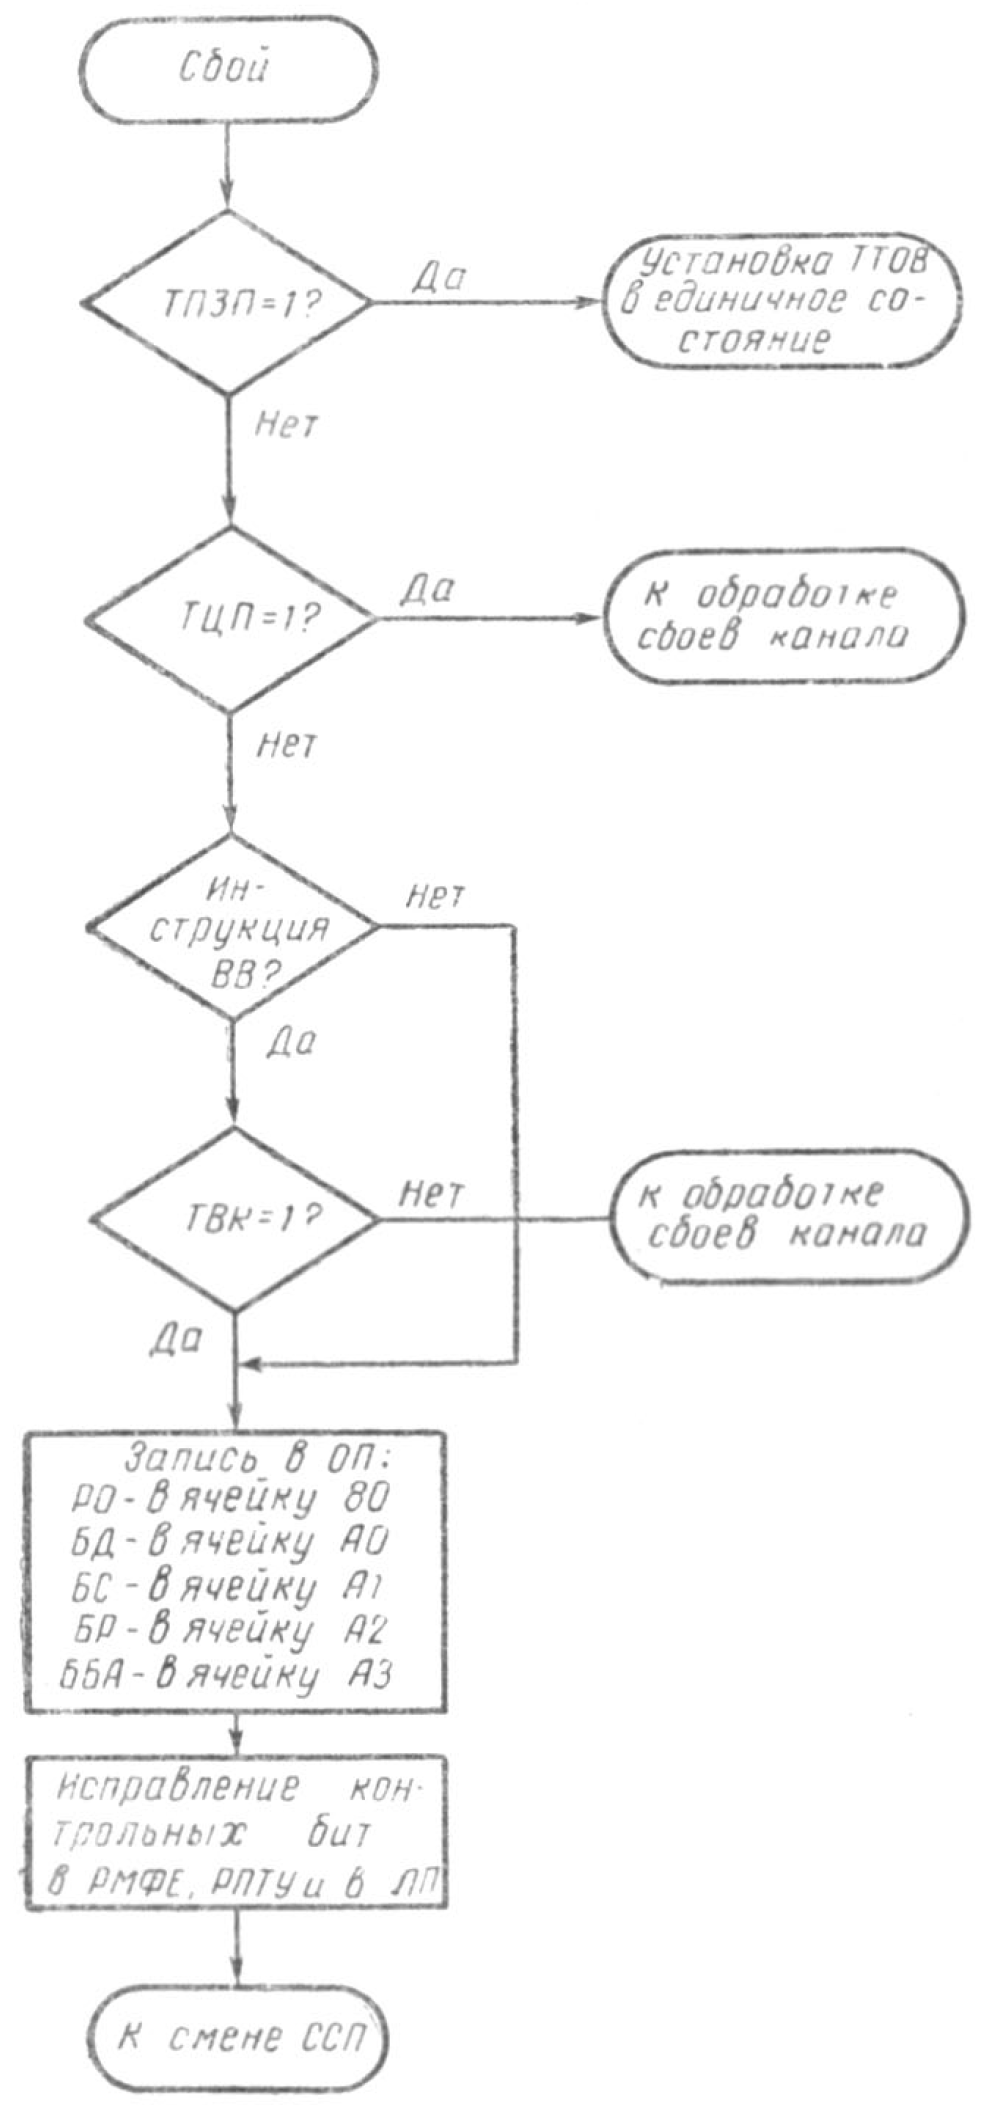 Блок-схема микропрограммы обработки машинных сбоев, скан из [1]